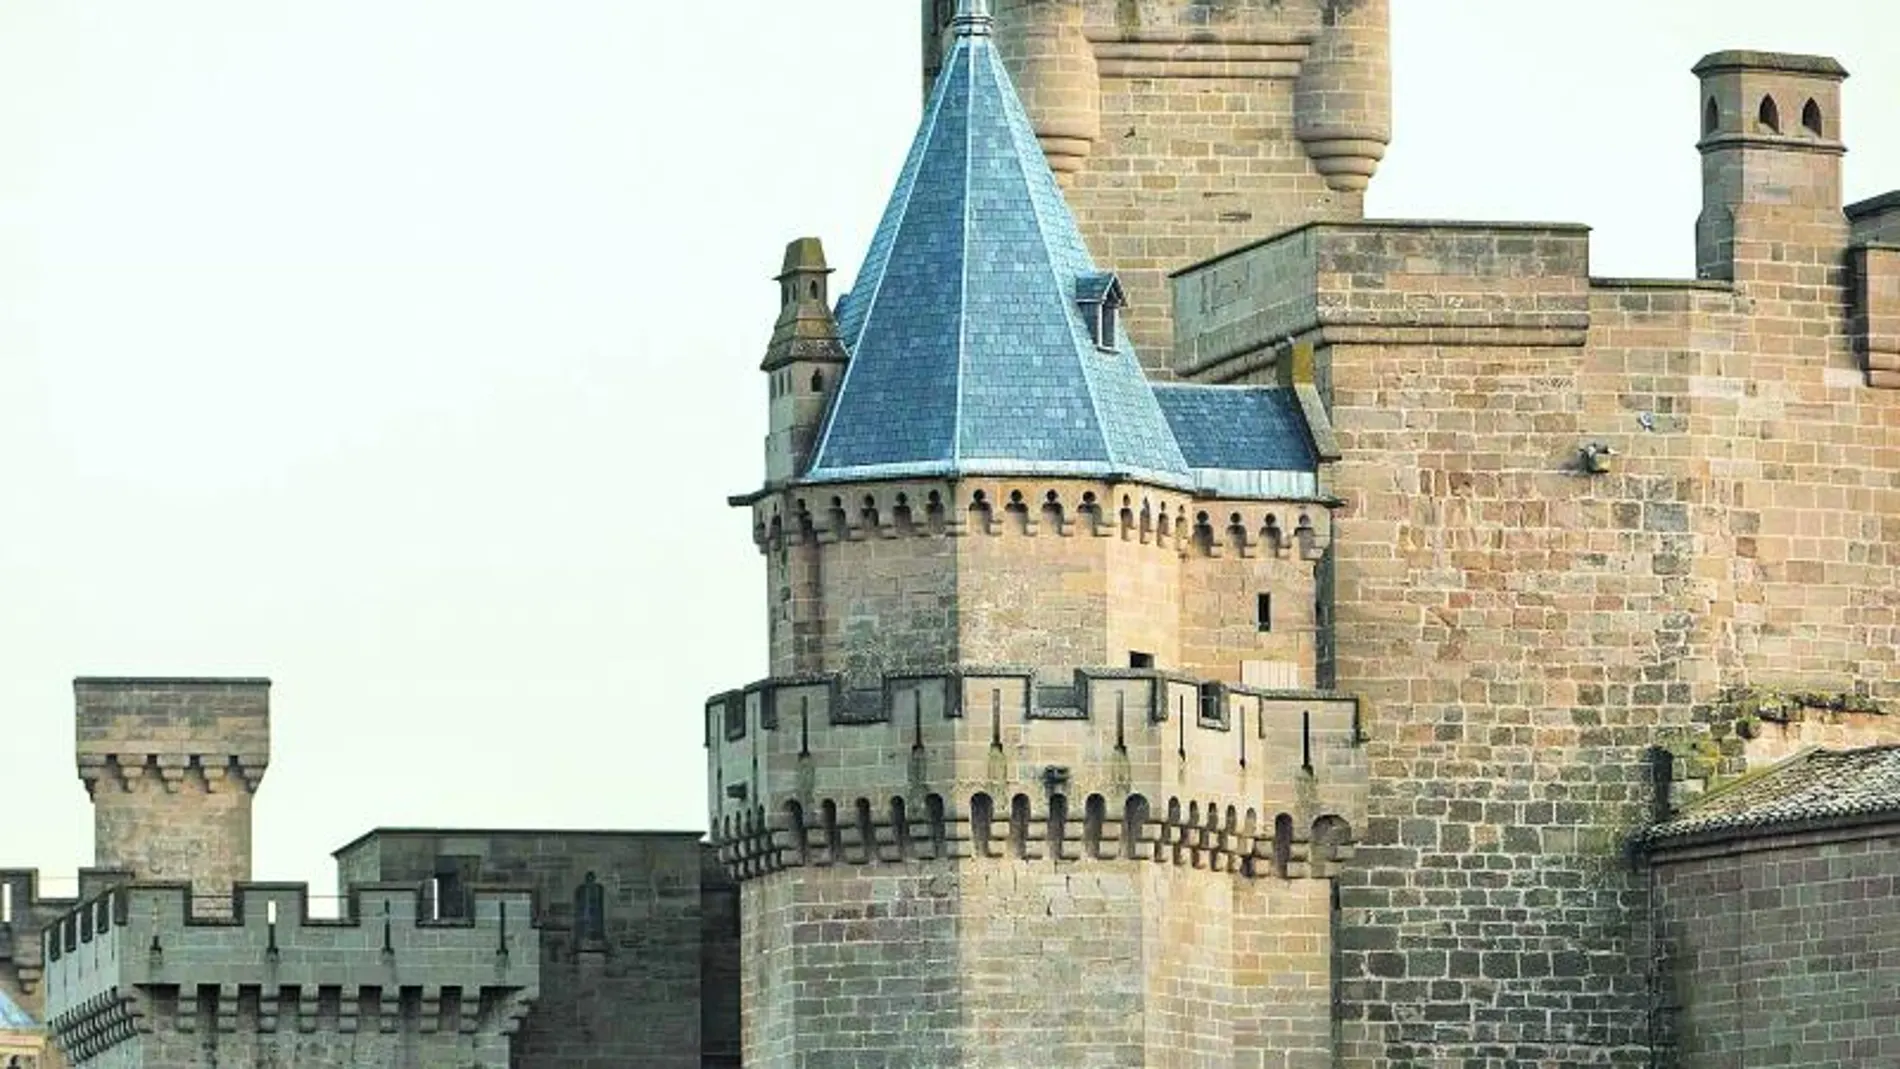 Detalle del Castillo de los Reyes de Olite, en la zona media de Navarra